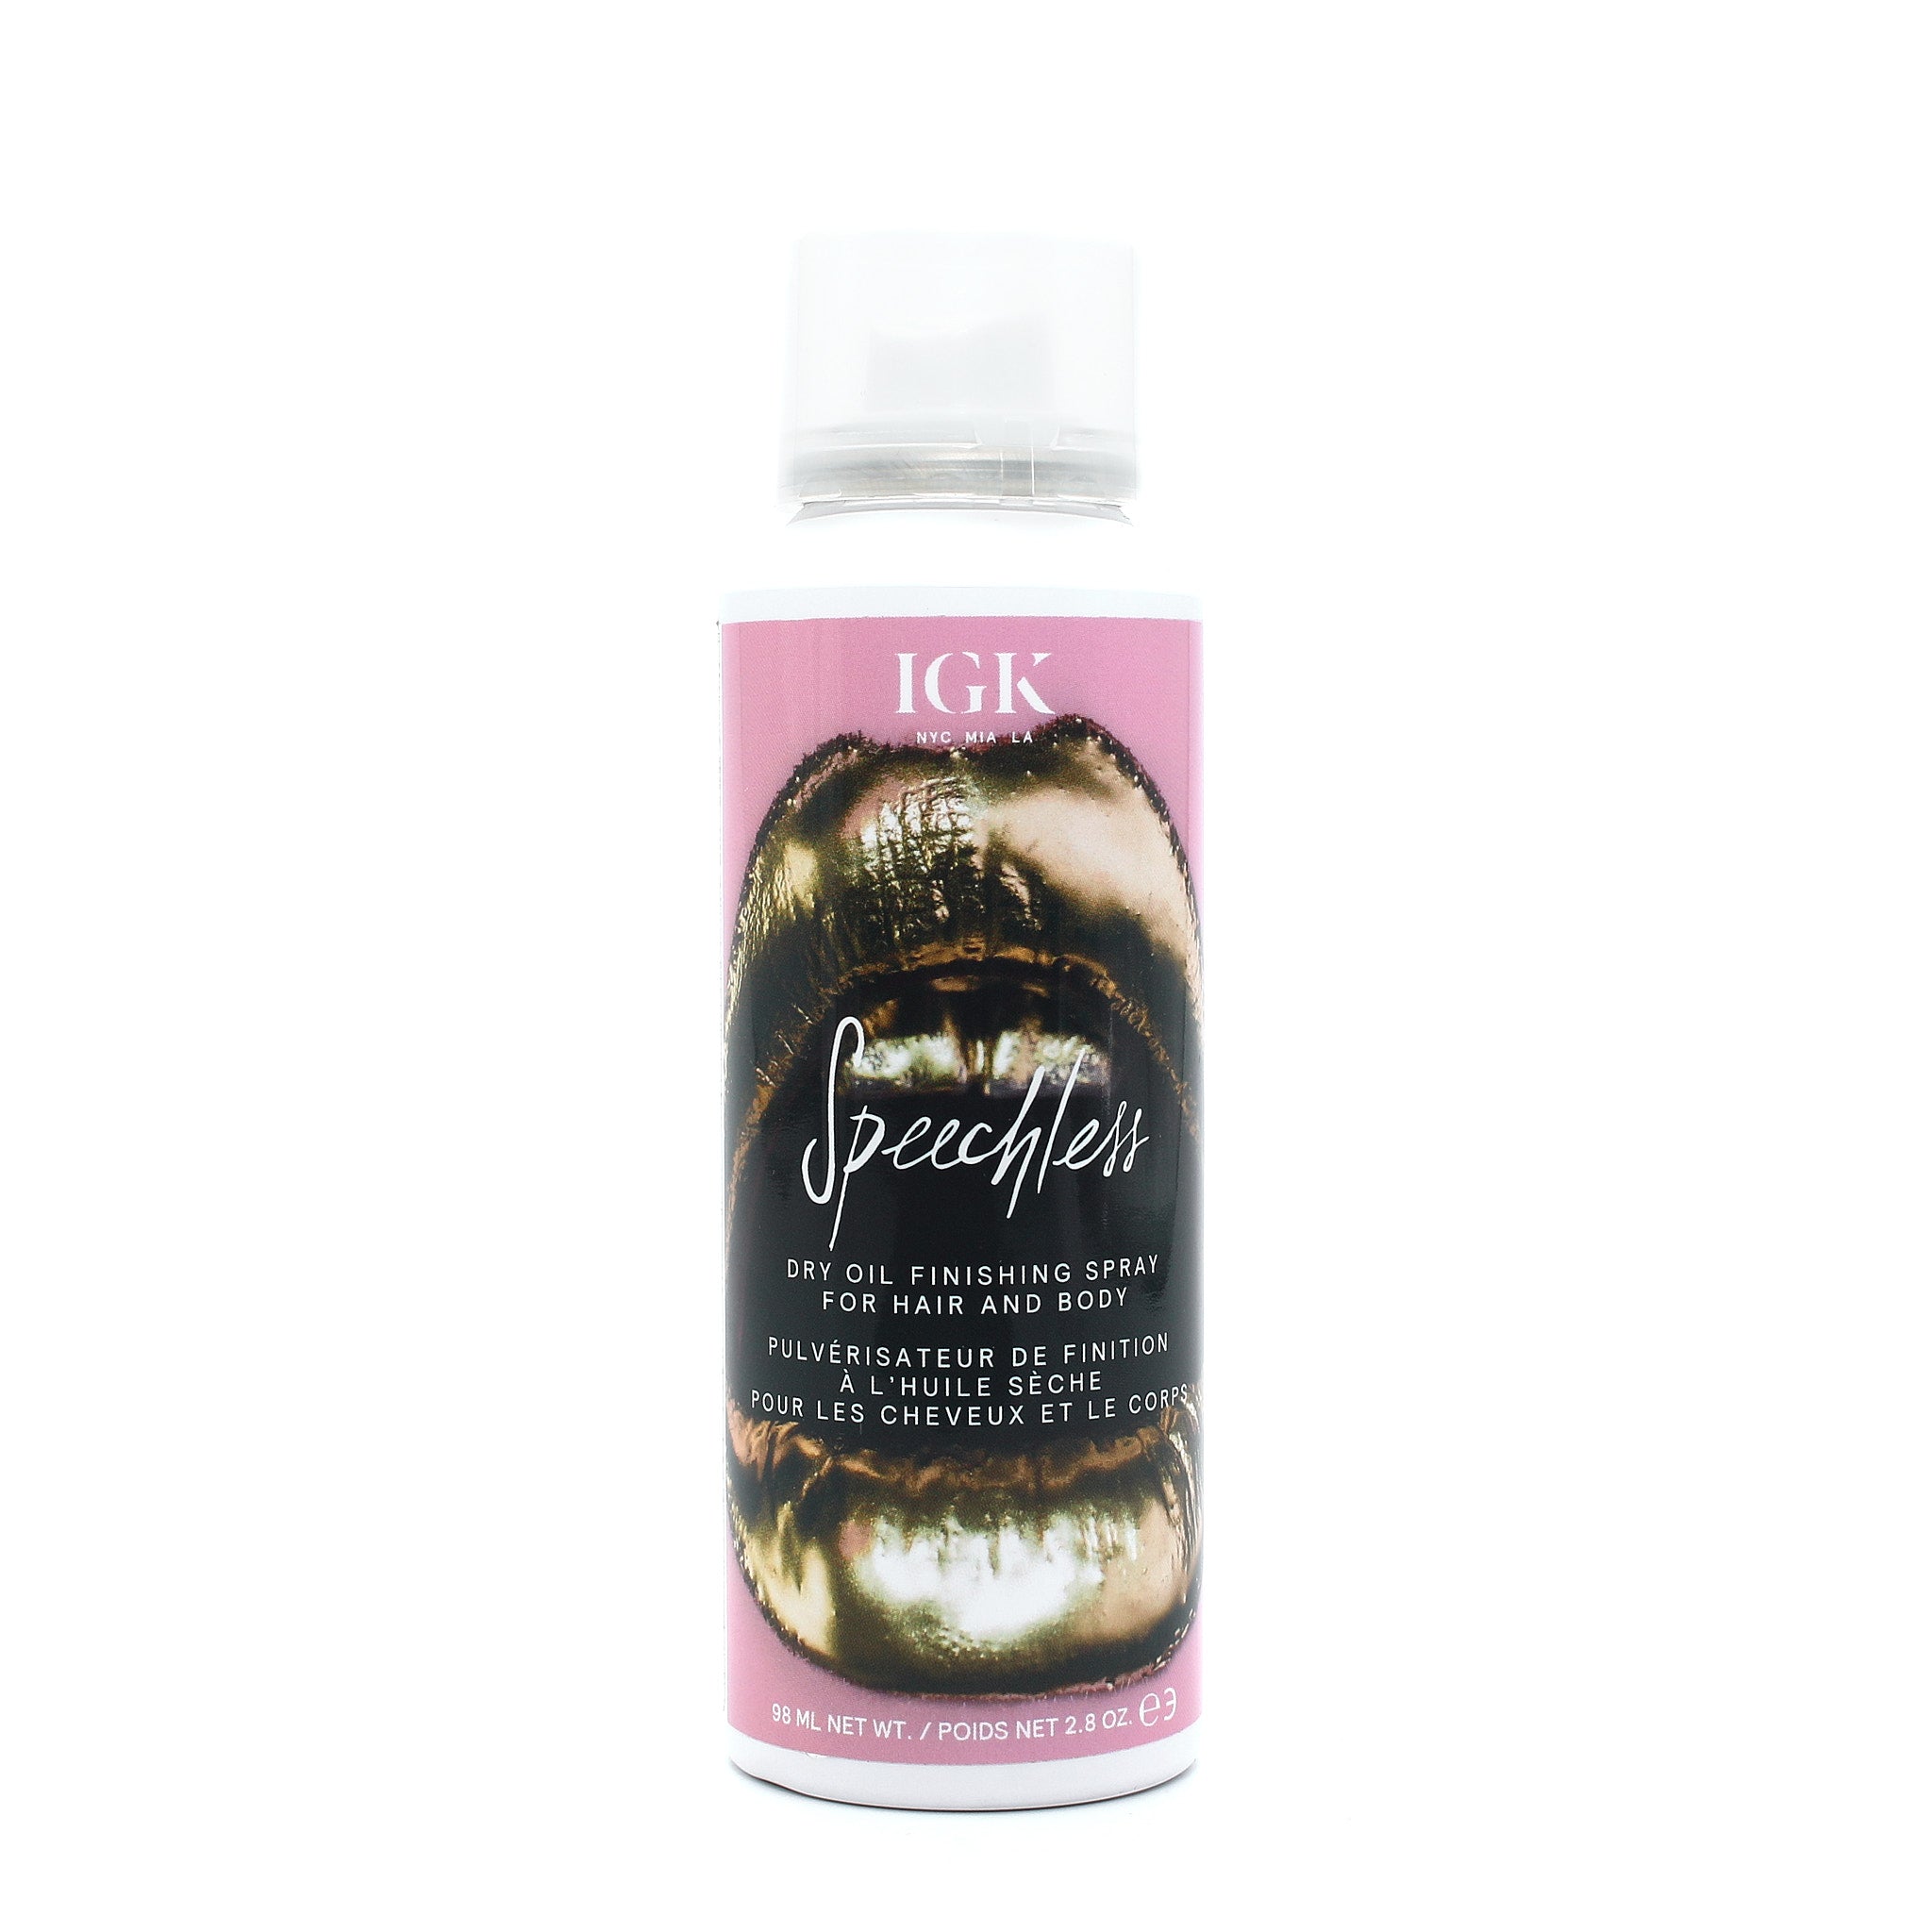 IGK Speechless Dry Oil Finishing Spray for Hair and Body 2.8 oz